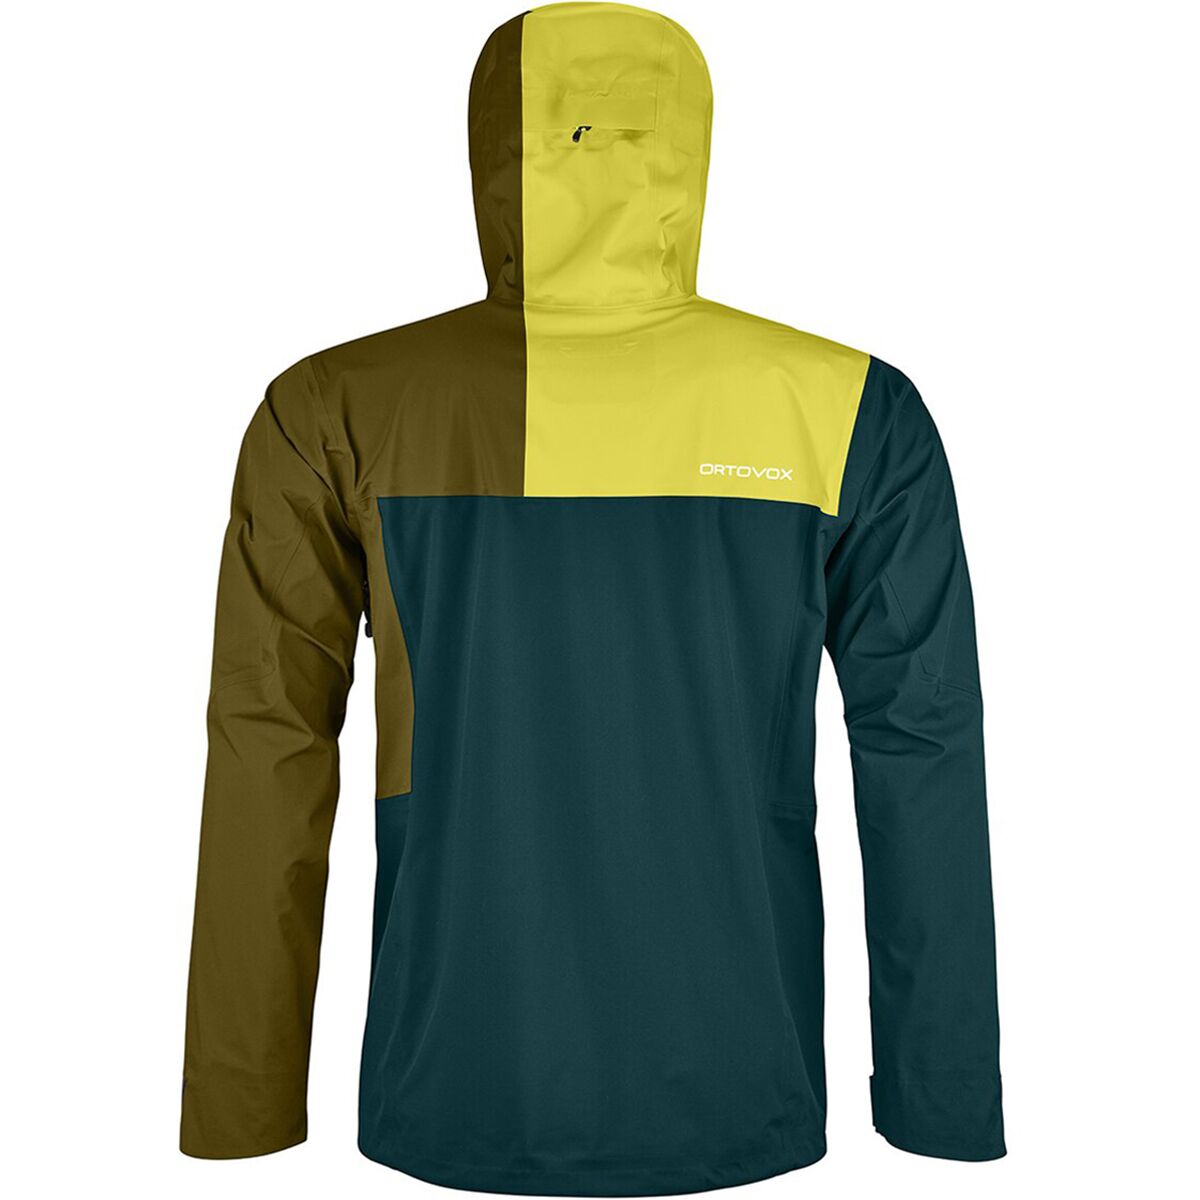 Ortovox 3L Ortler Jacket - Men's - Clothing